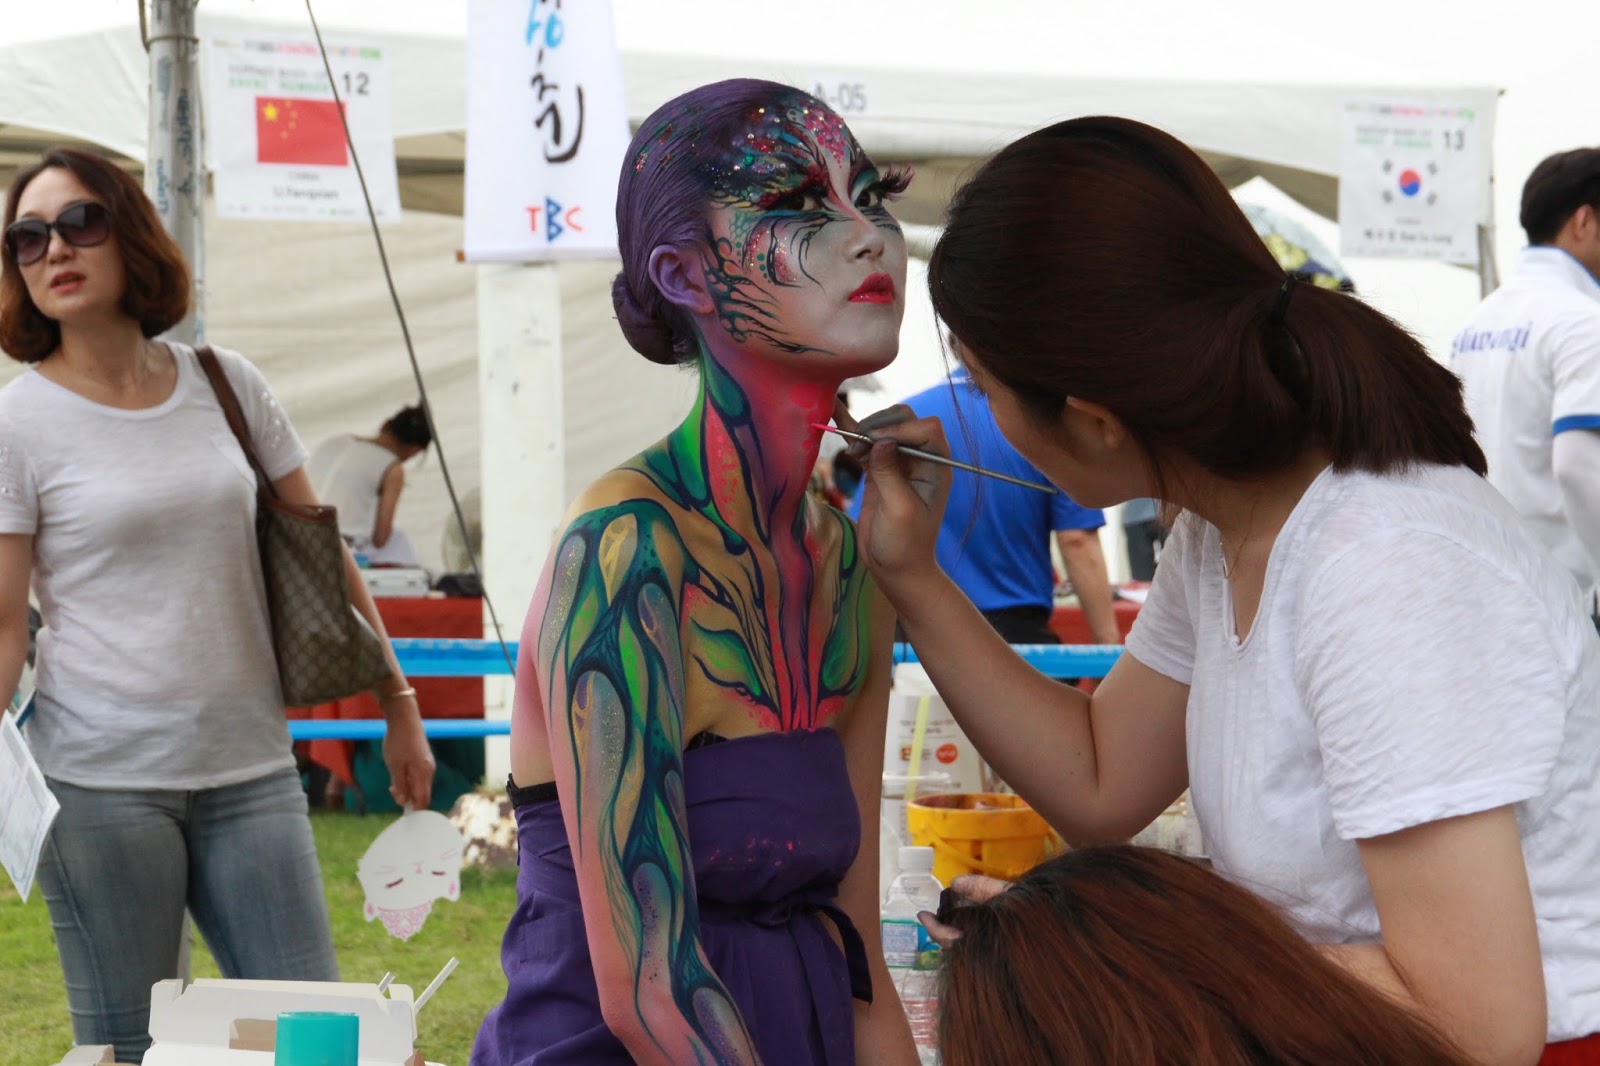 Story Of Fancy Daegu International Bodypainting Festival 2015 Held Last Weekend